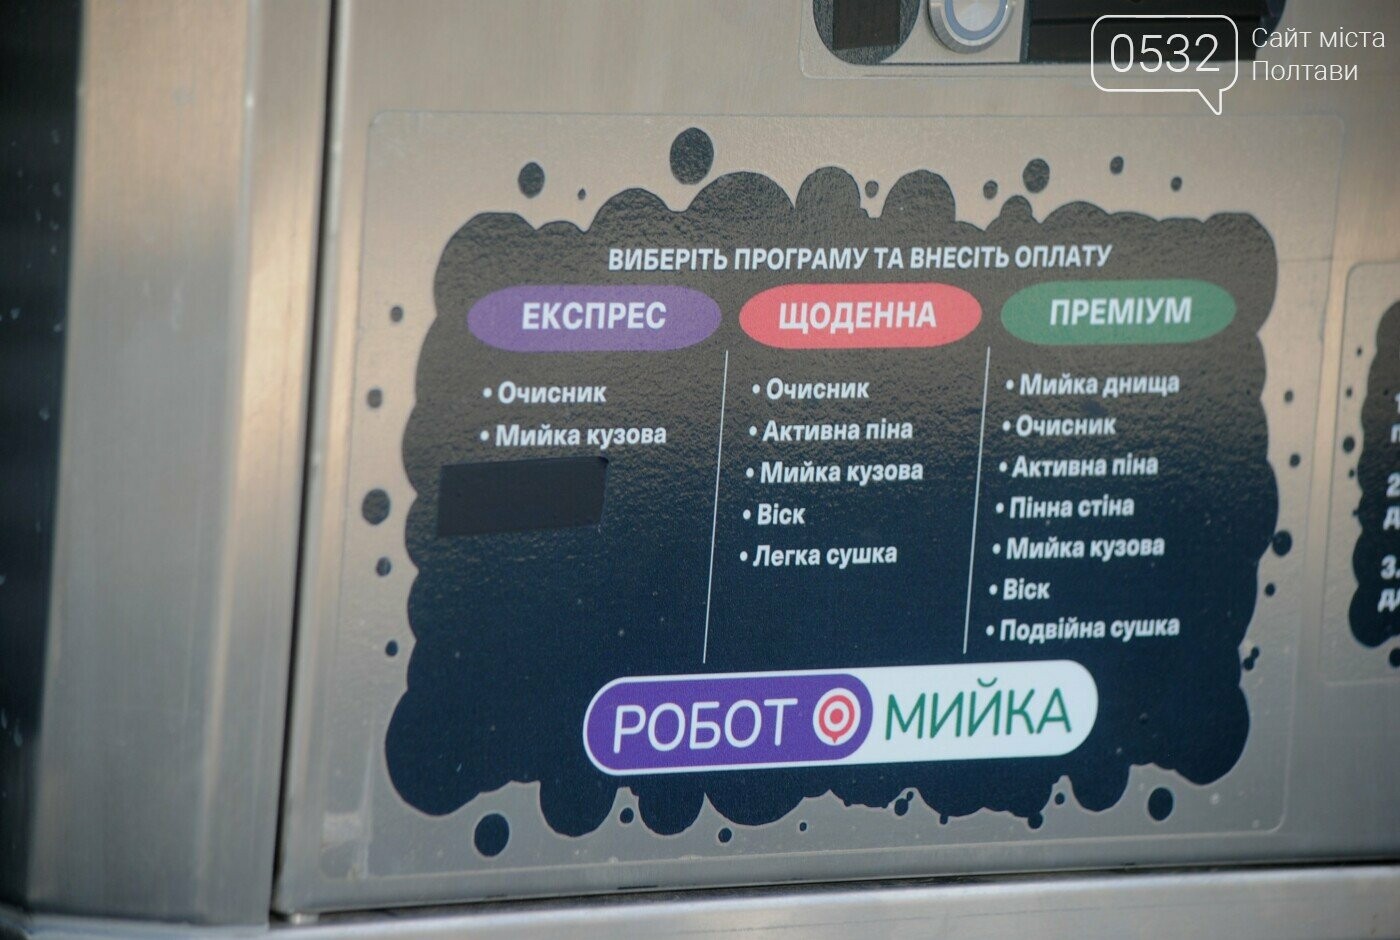 "ВСІ тут" - безконтактна робот-мийка у Полтаві, яка економить час клієнтів та береже їх авто